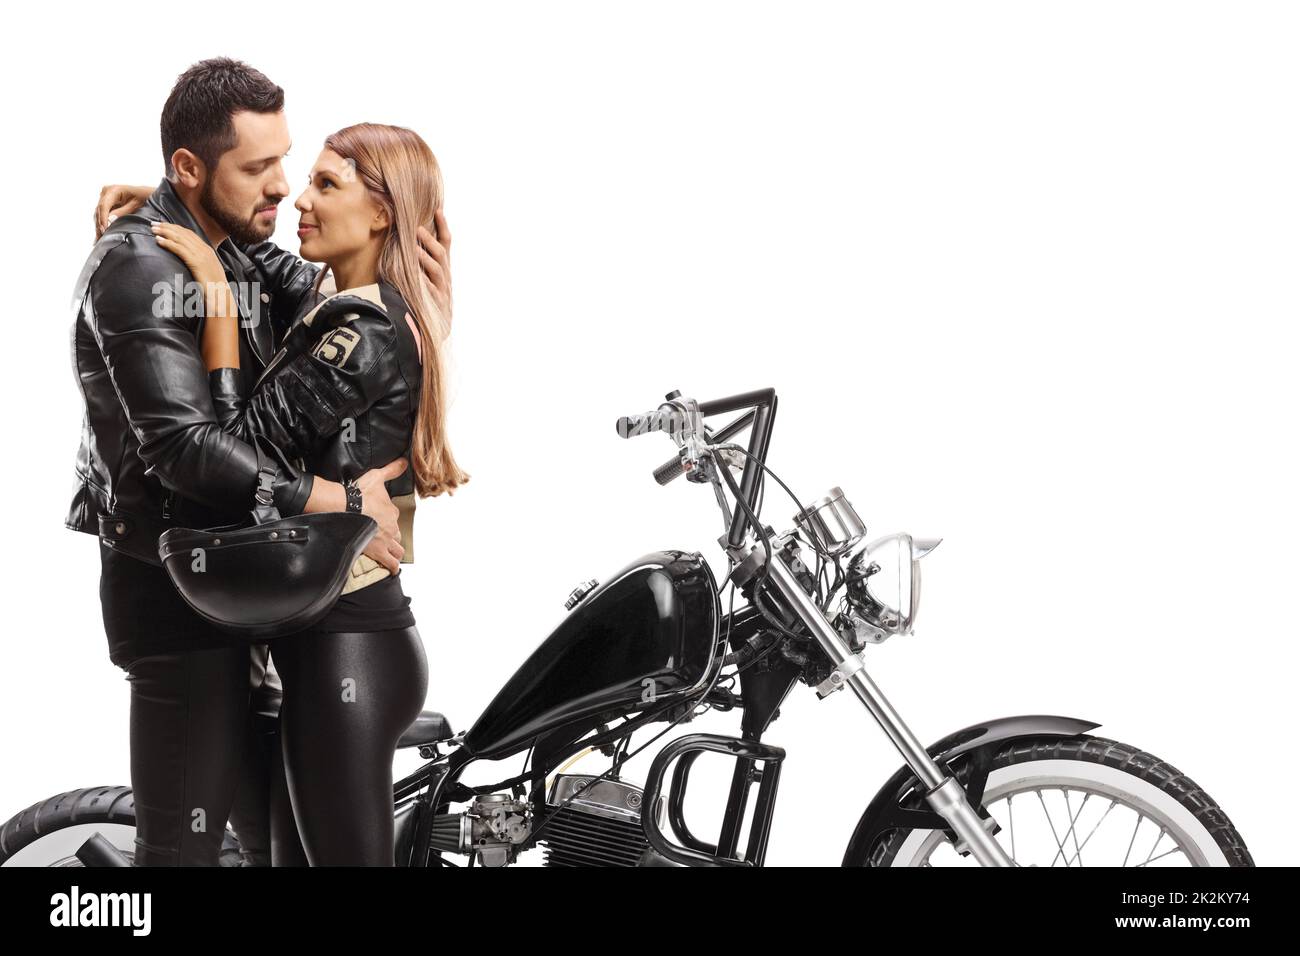 Hombre y mujer en el abrazo delante de una moto picadora aisladas sobre fondo blanco Foto de stock